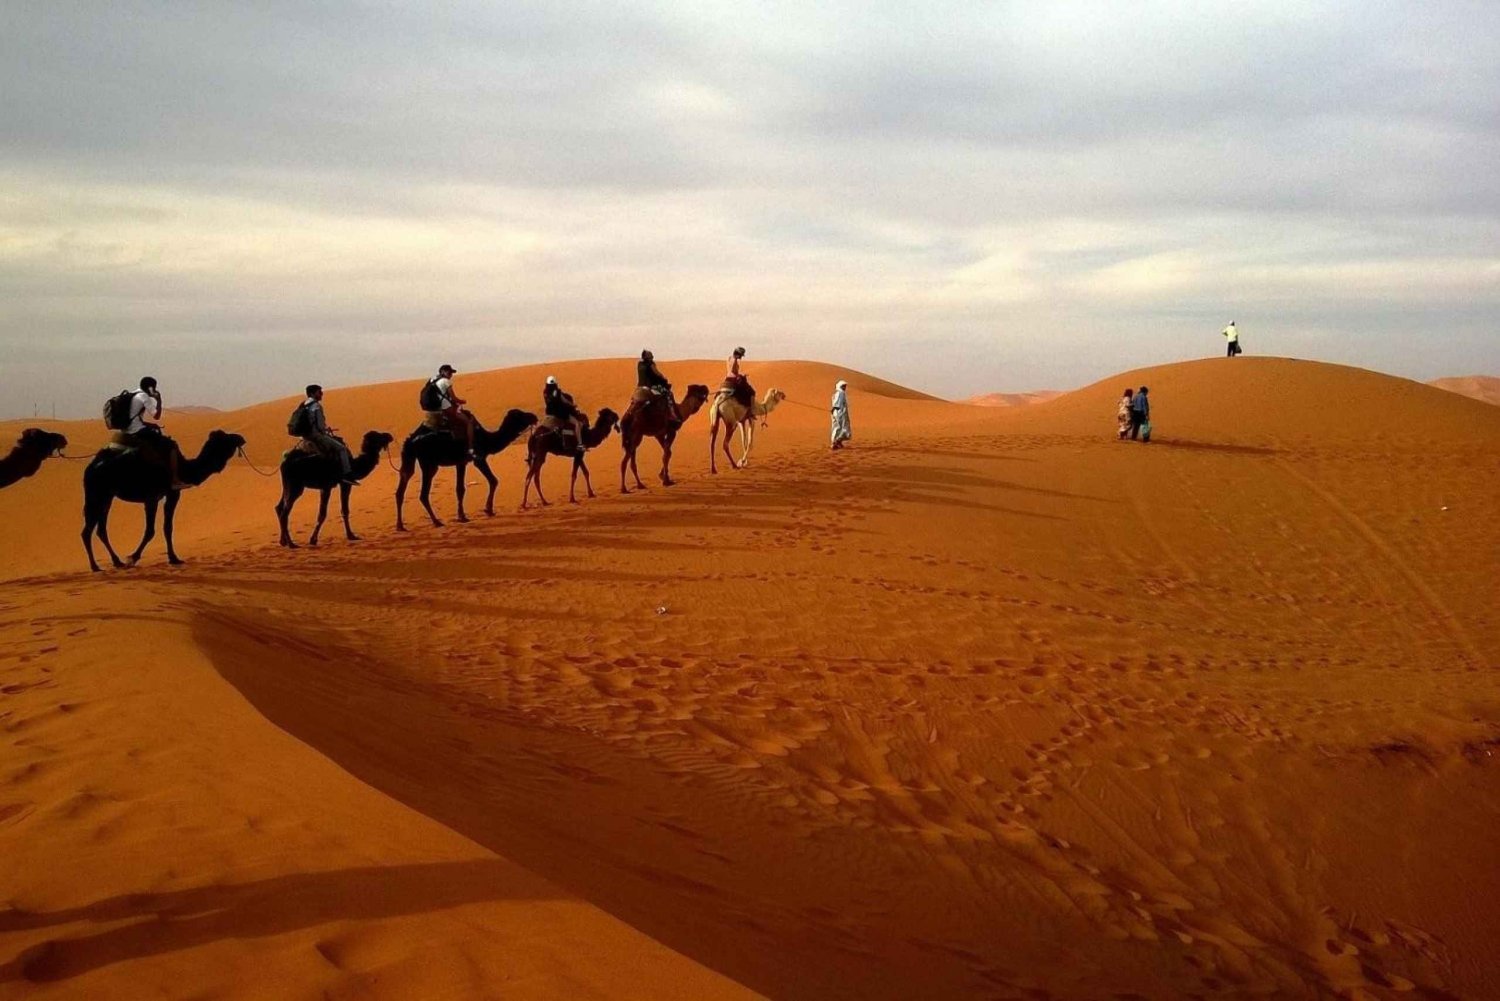 Excursión del Desierto al Oasis : Arenas de Wahiba a Wadi Bani Khalid